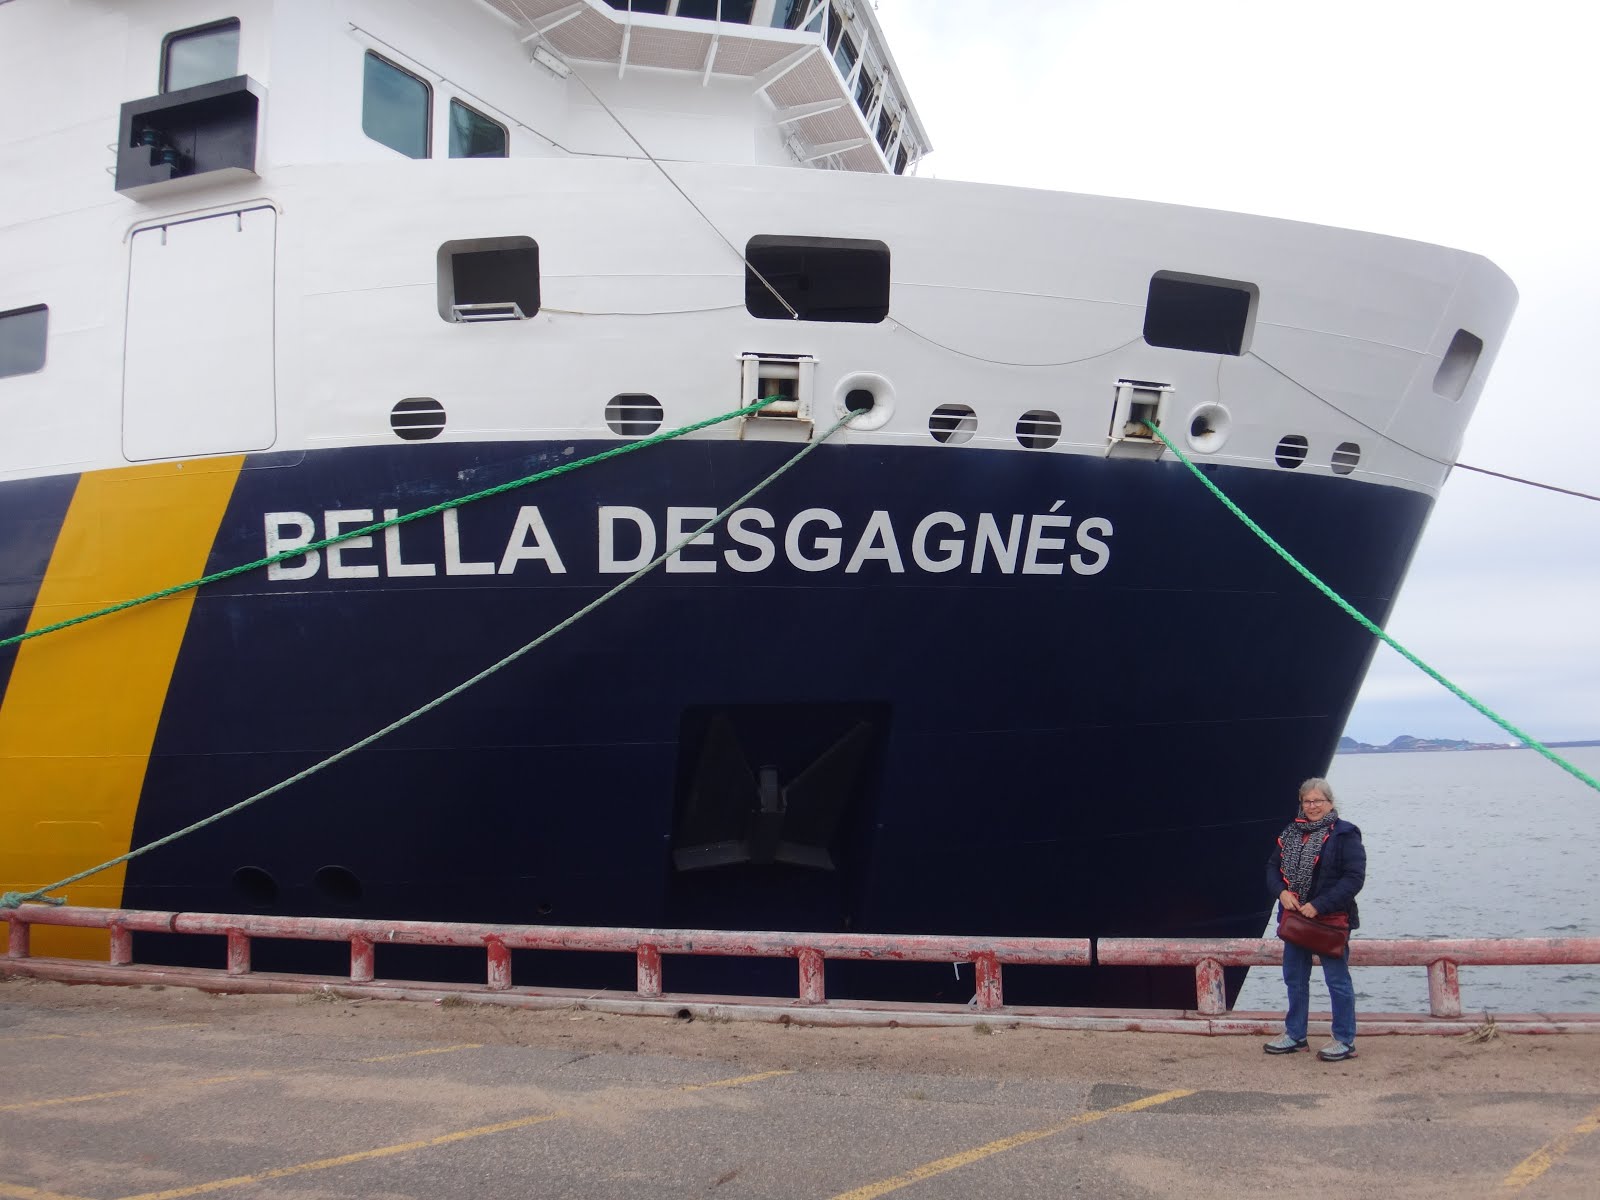 Notre Voyage sur le Bella Desgagnés